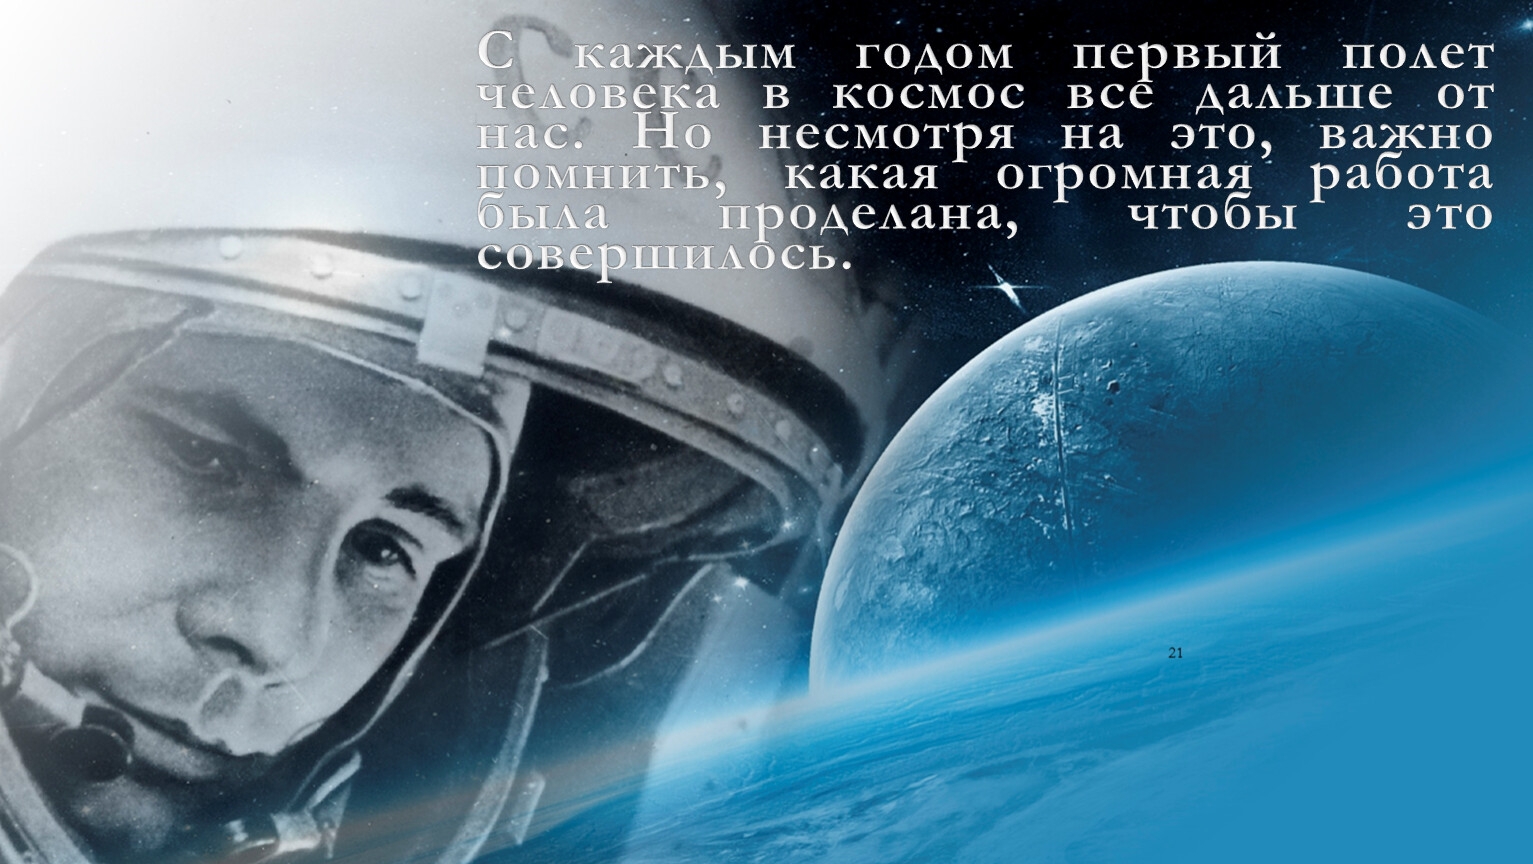 Полетели люди и года. Гагаринский урок «первый полет человека в космос». 60 Летие полета Гагарина в космос.